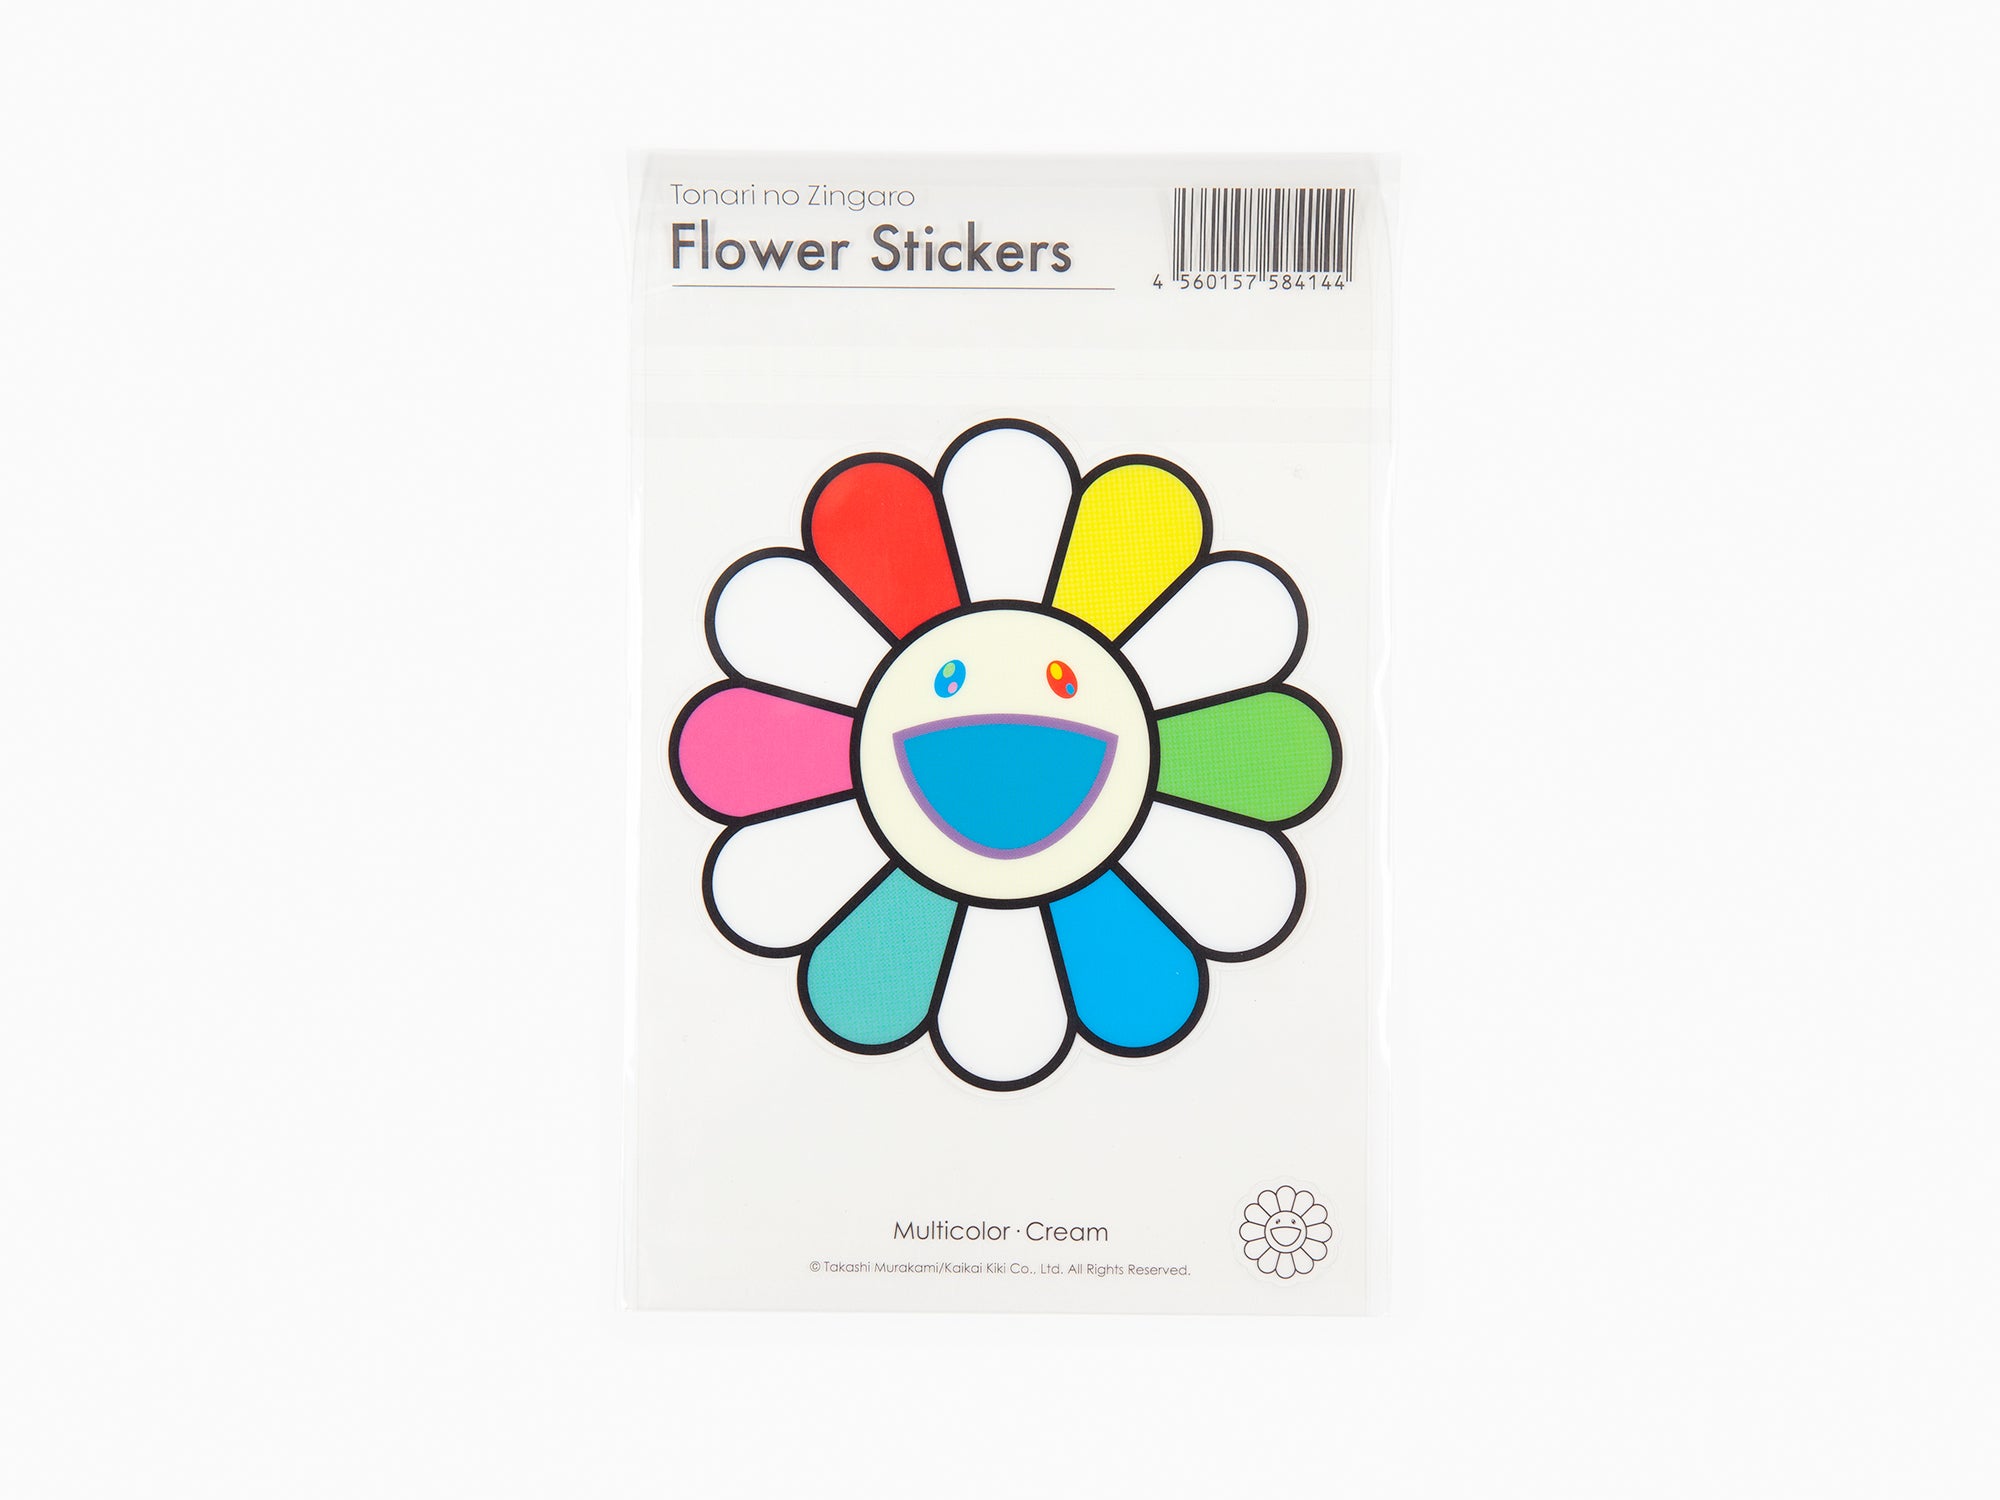 Takashi Murakami - Flower Plush Key Chain - rainbow & black - Perrotin PARIS